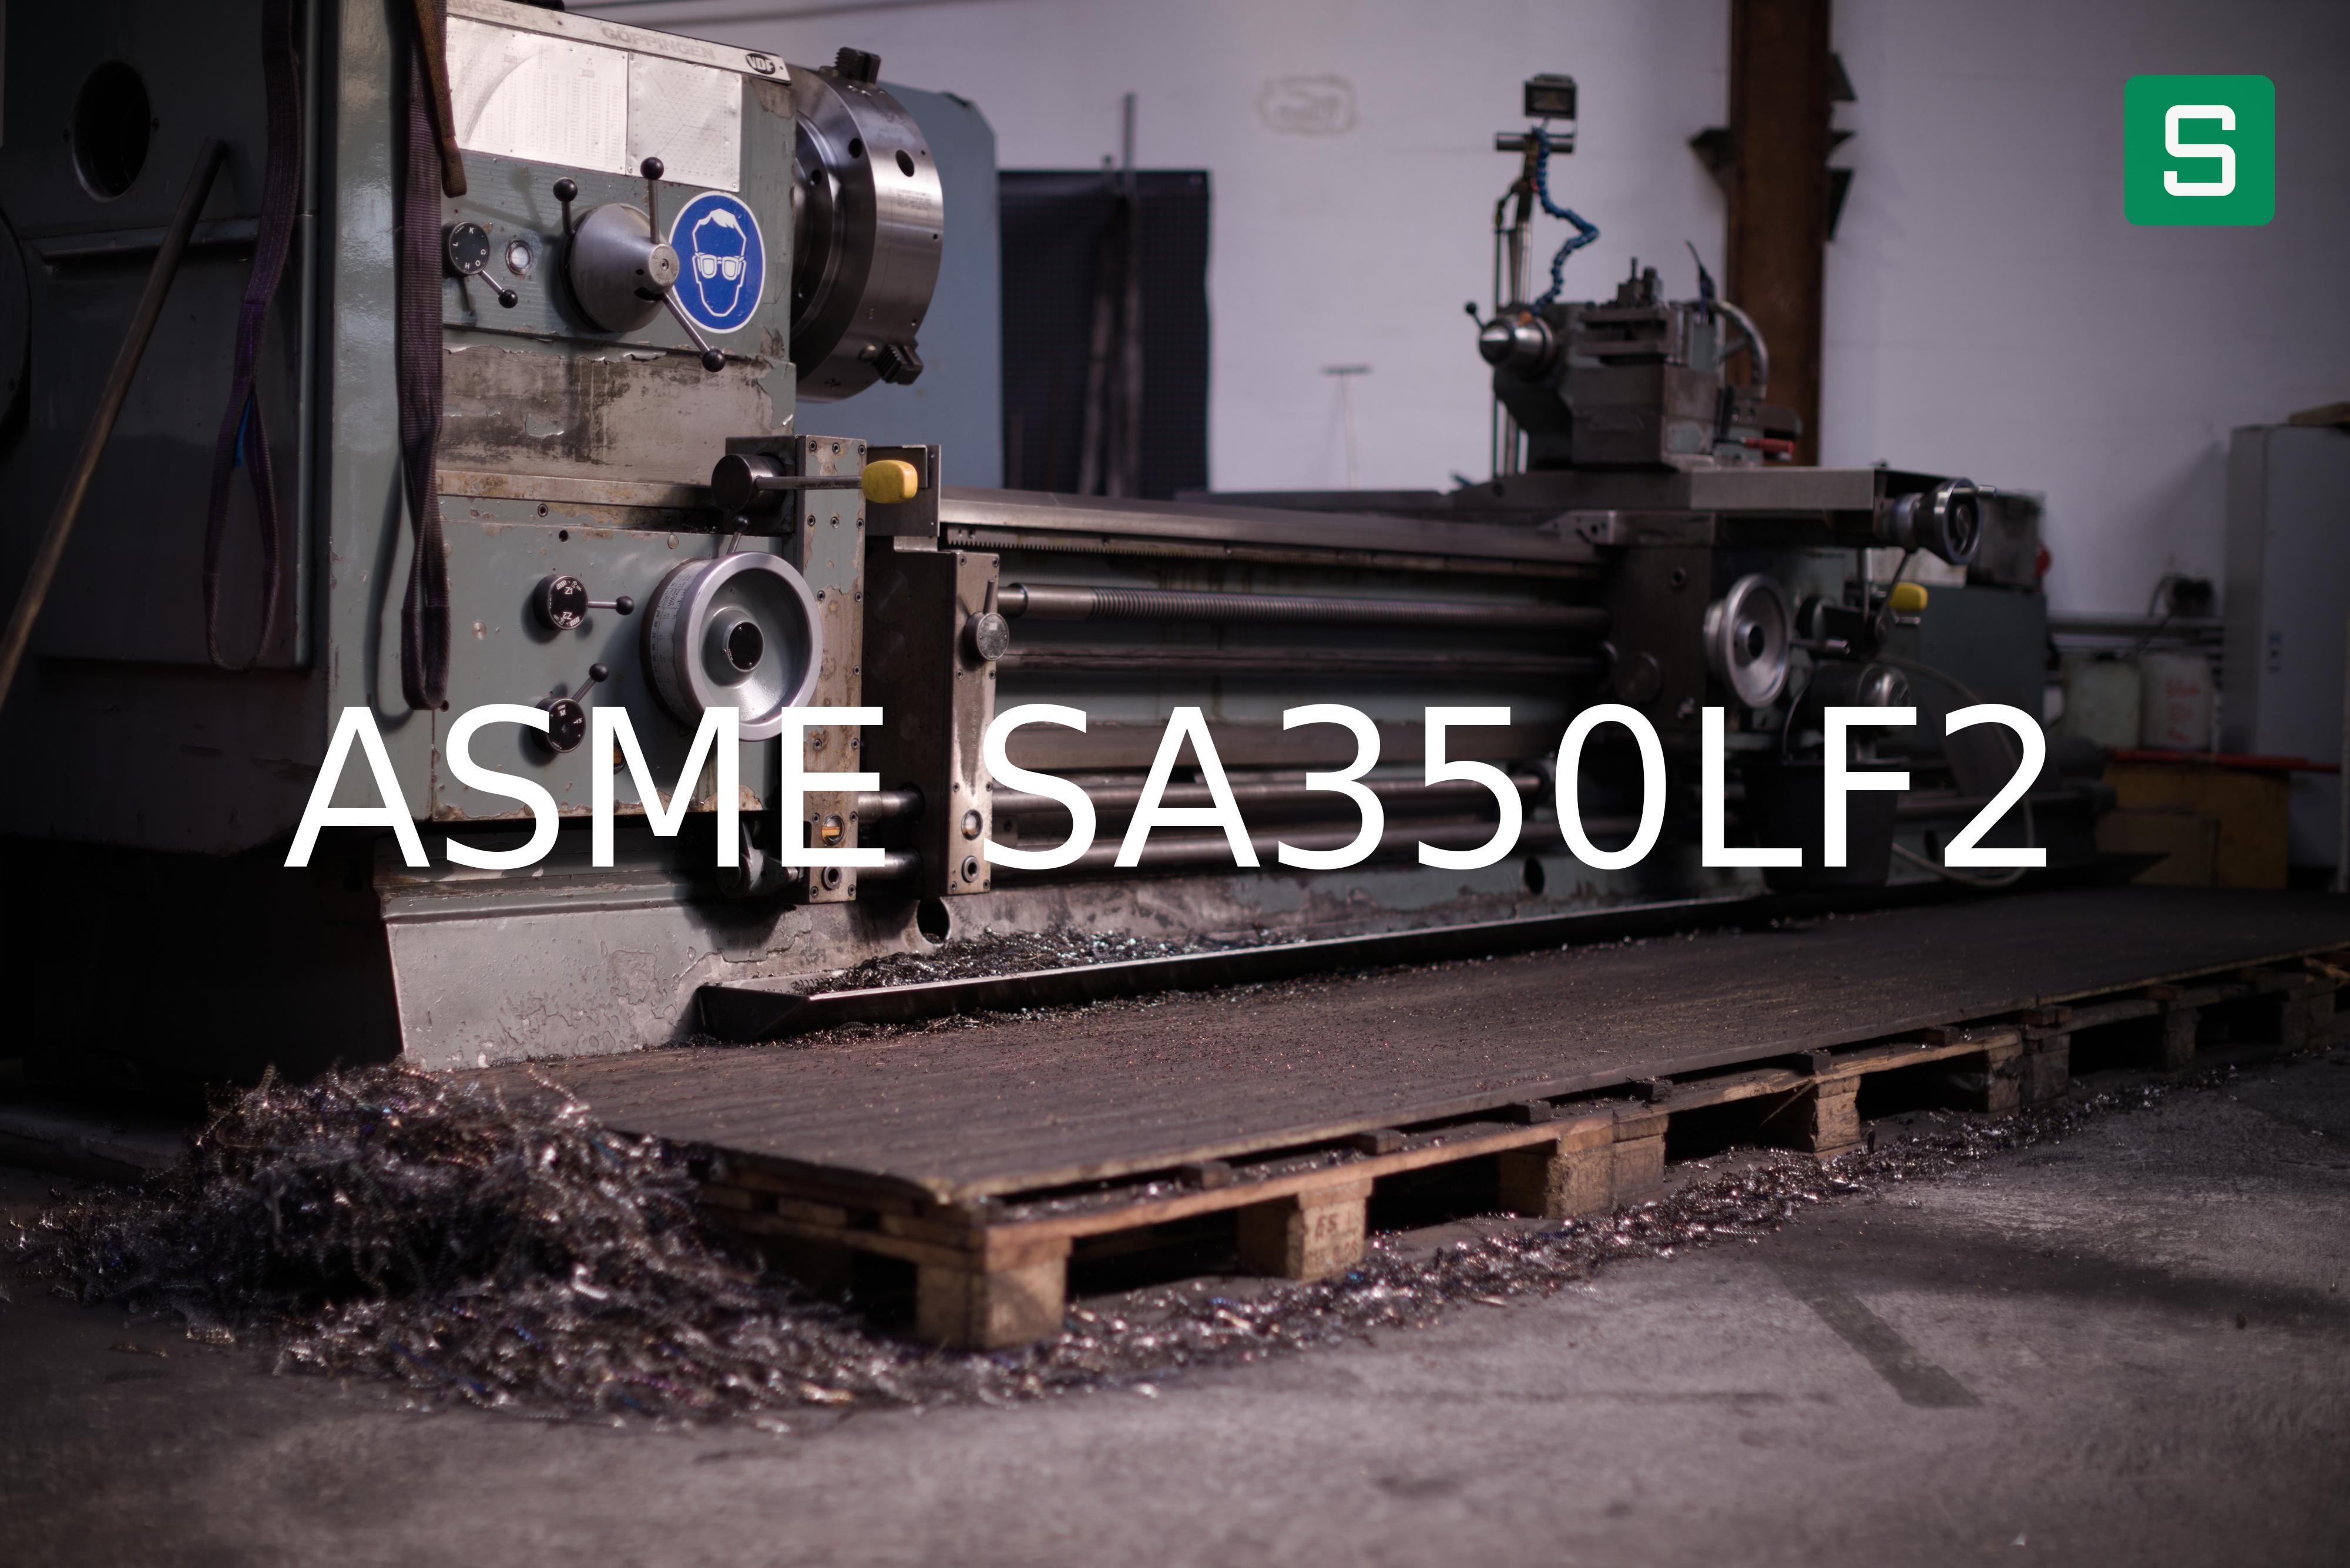 Steel Material: ASME SA350LF2